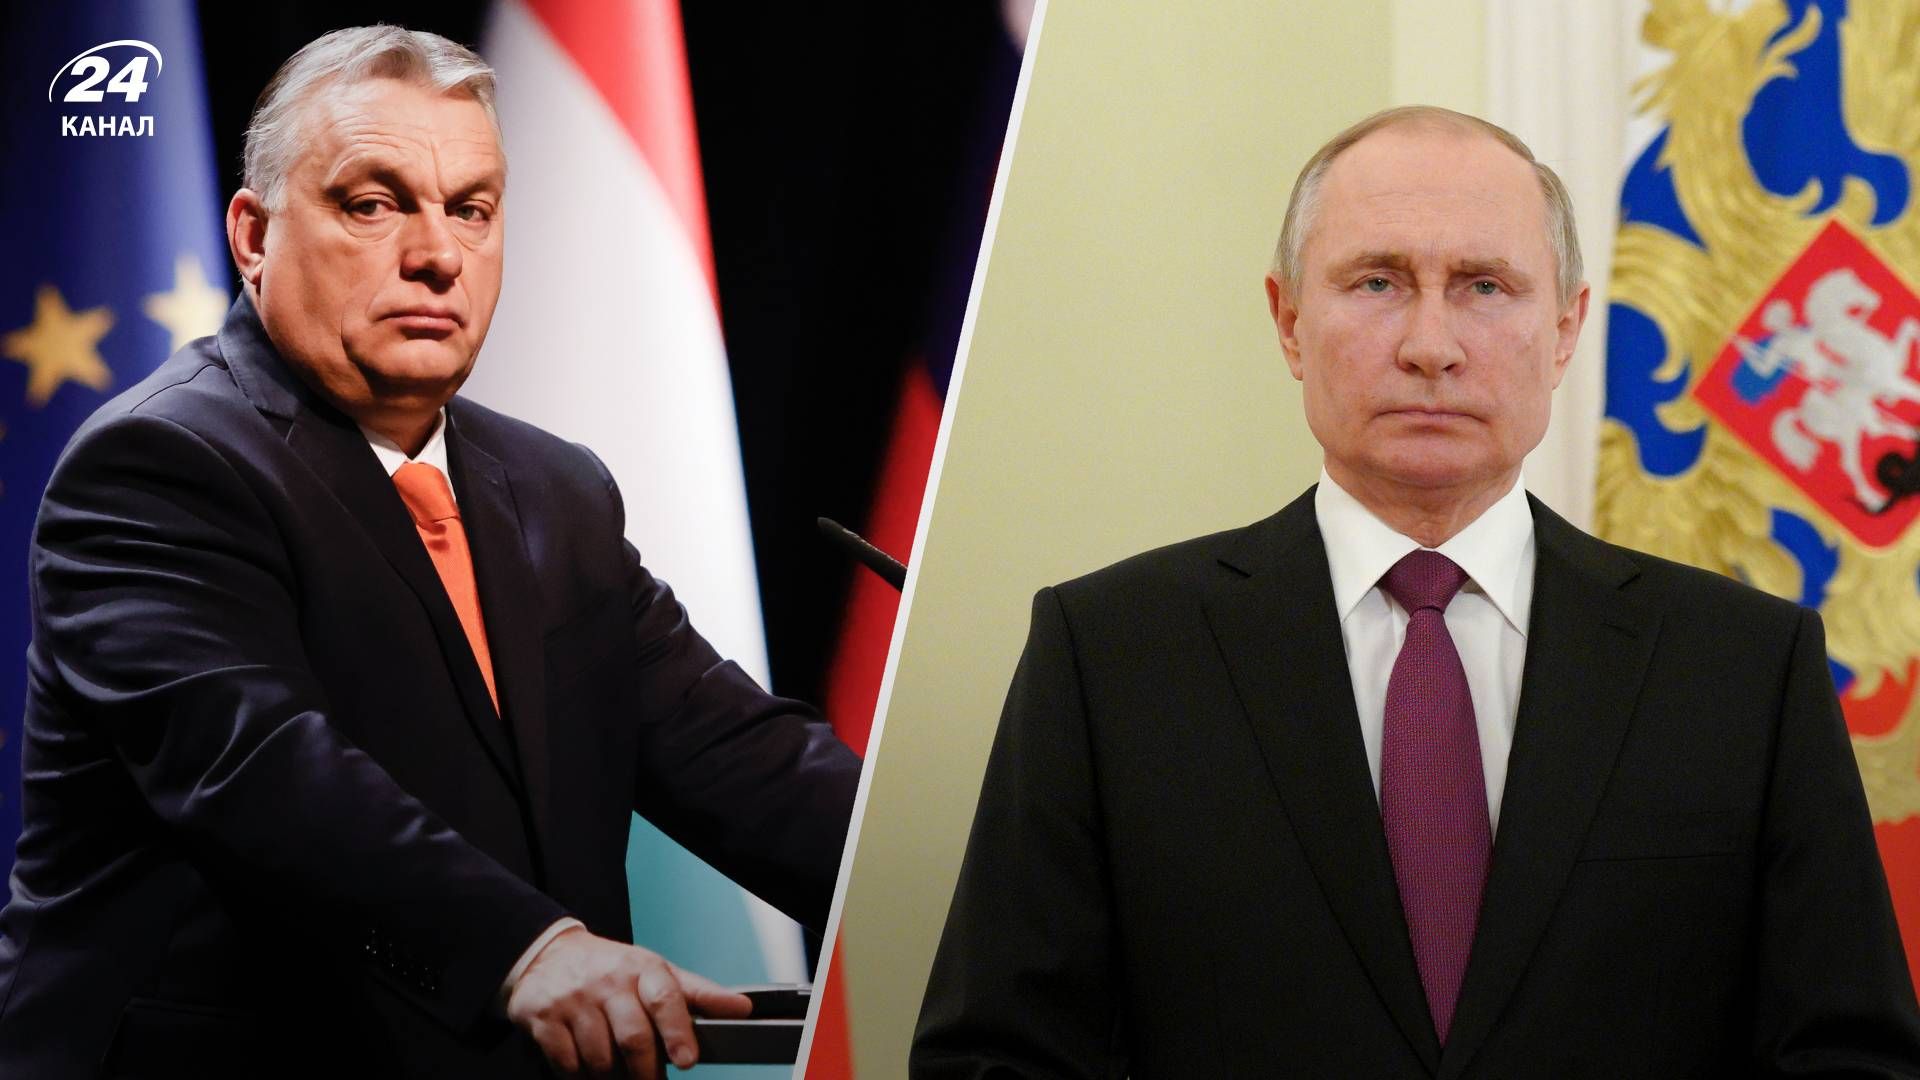 Виктор Орбан имеет длительную связь с Россией